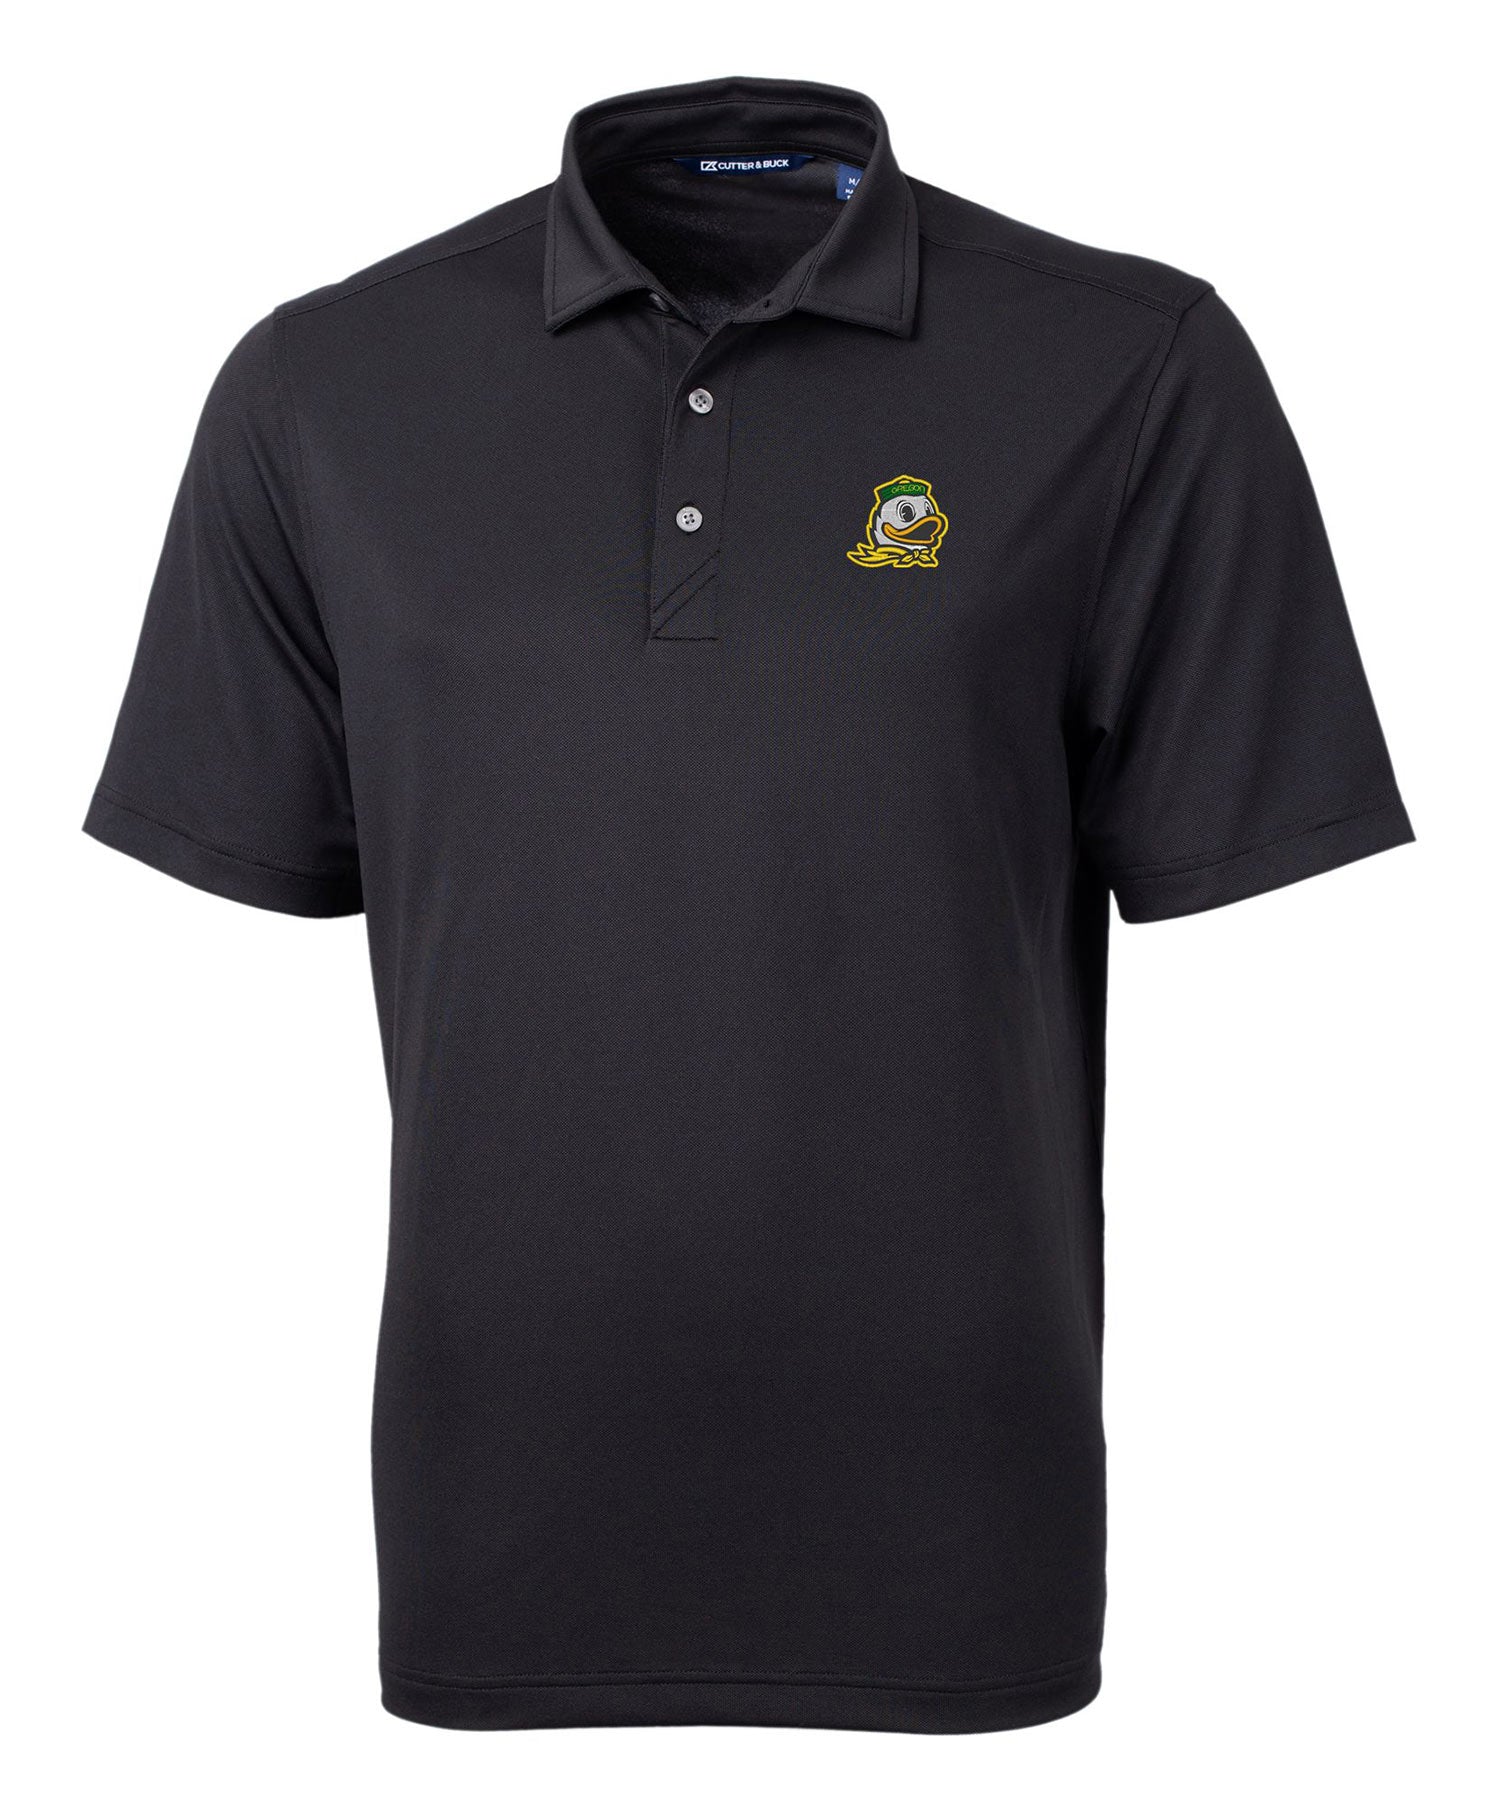 Cutter & Buck University of Oregon Ducks Short Sleeve Polo Knit Shirt, Men's Big & Tall